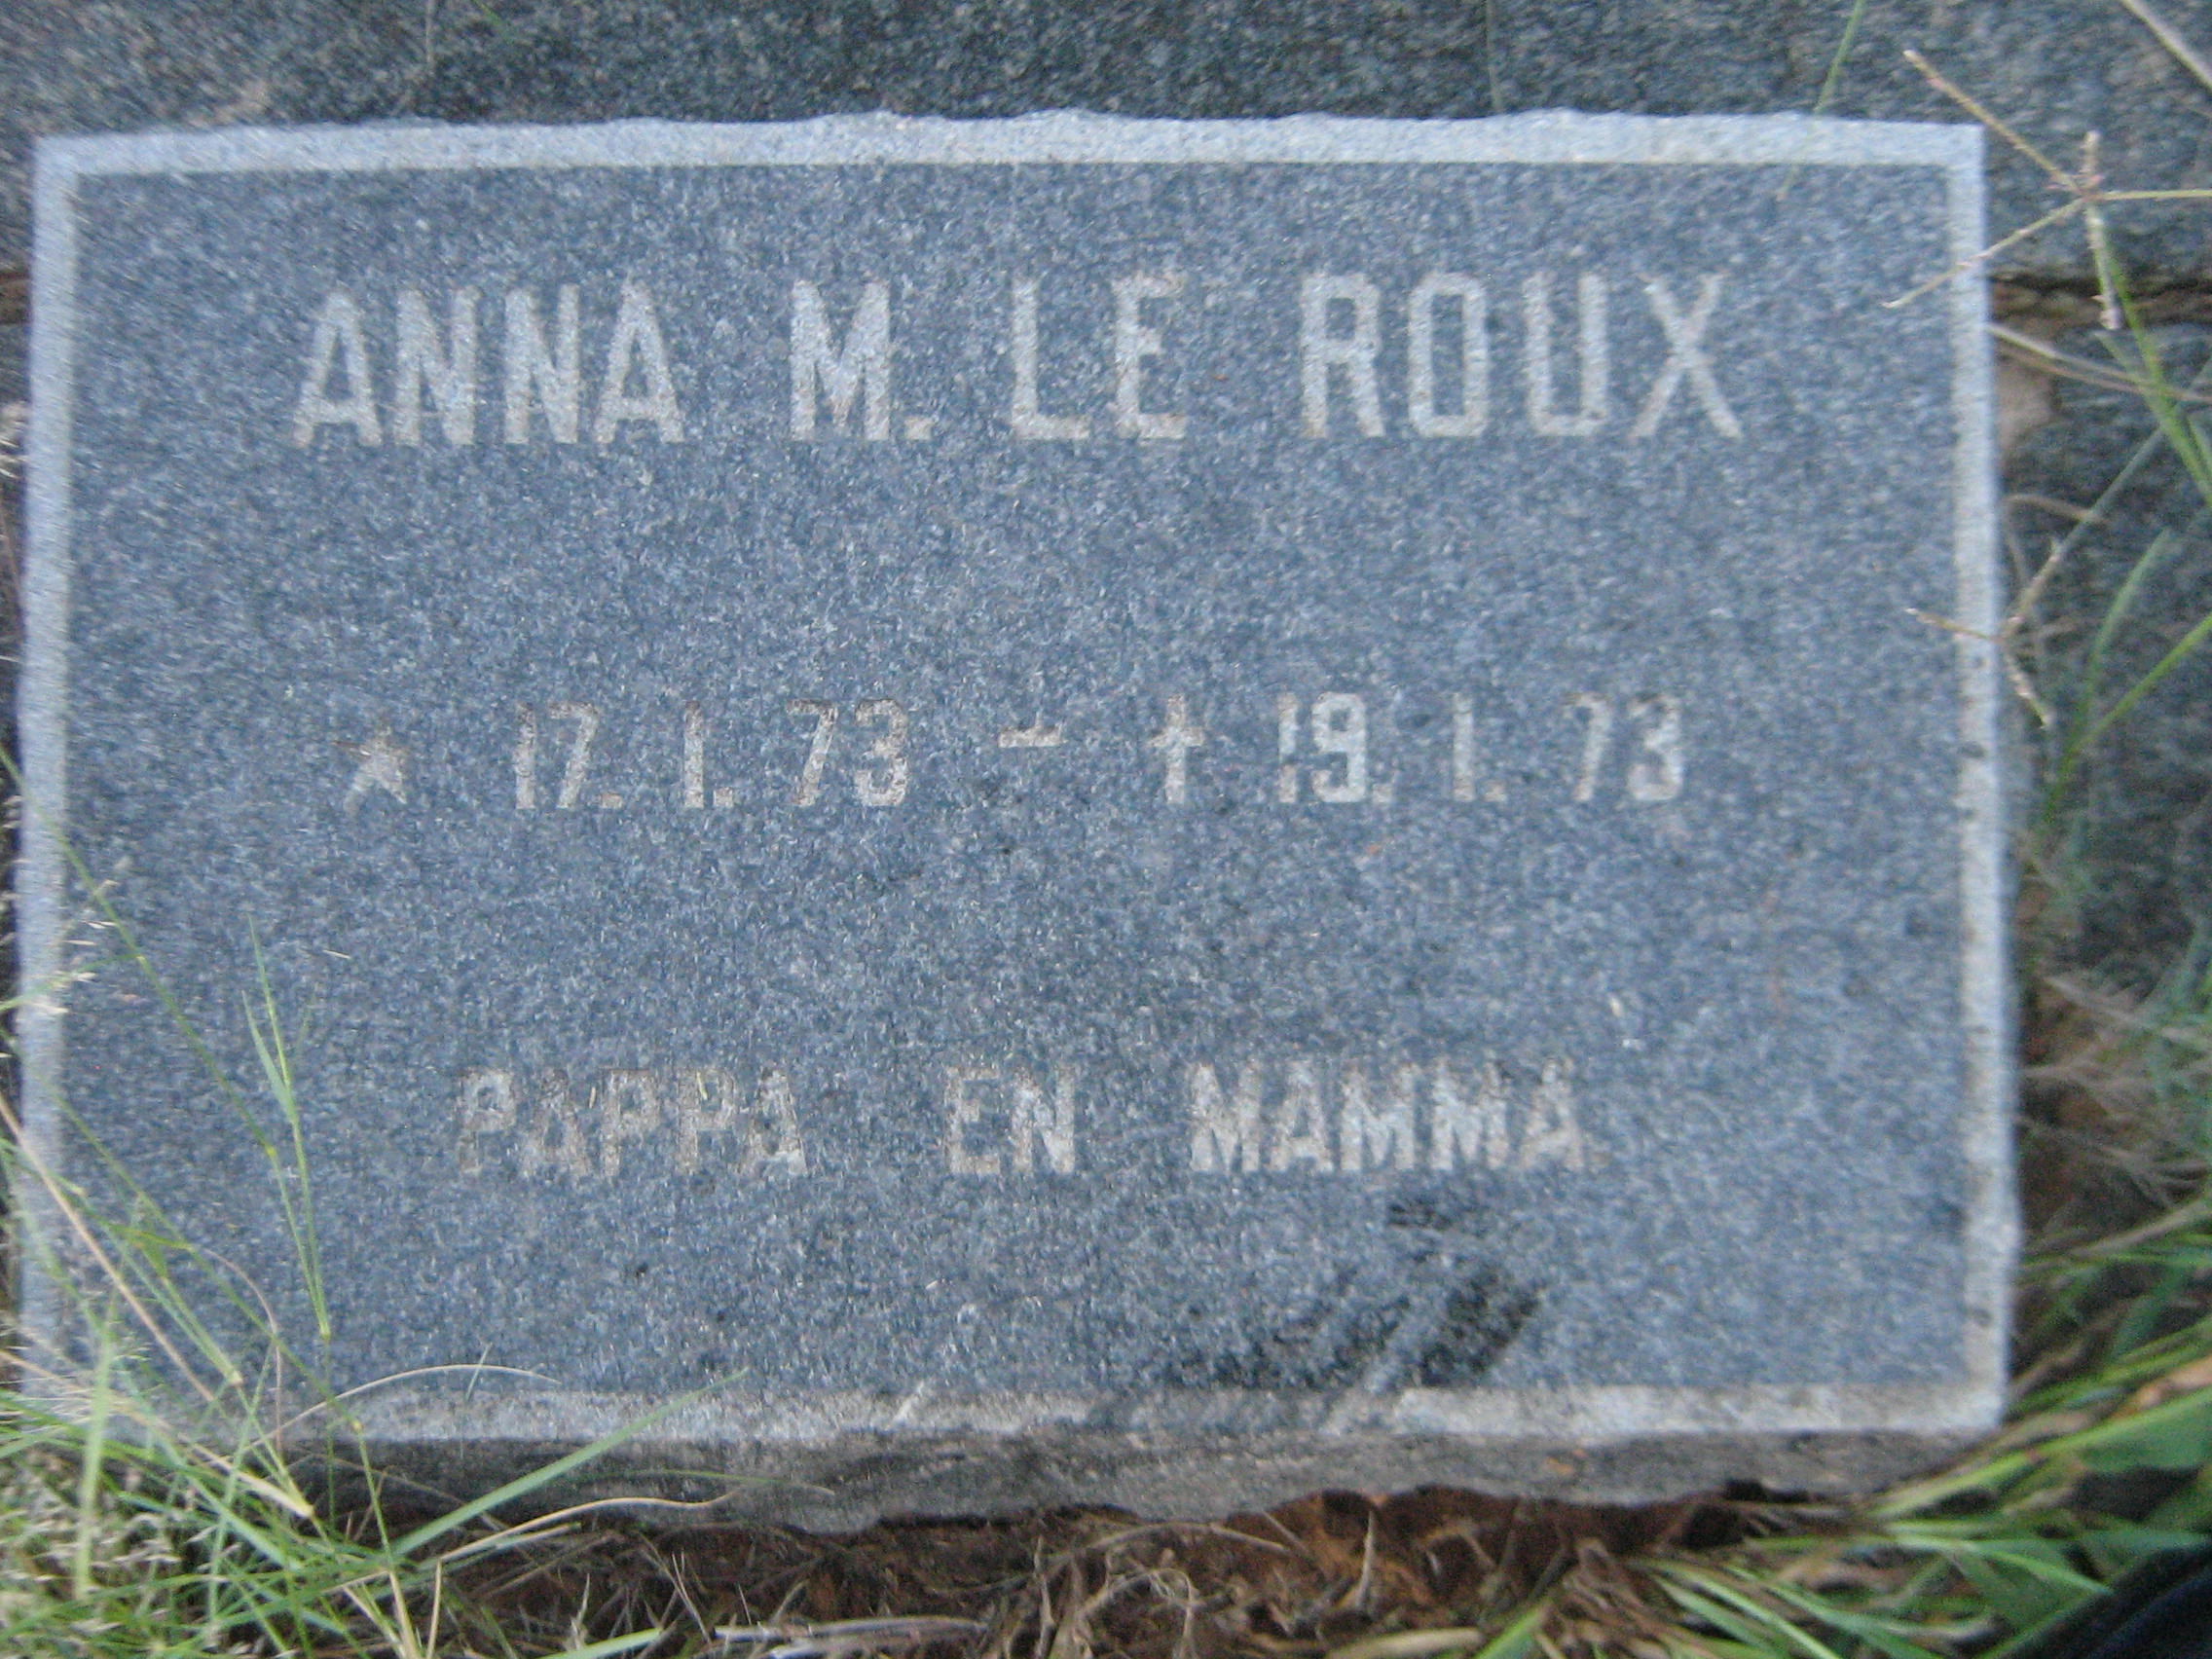 ROUX  Anna M., le 1973-1973